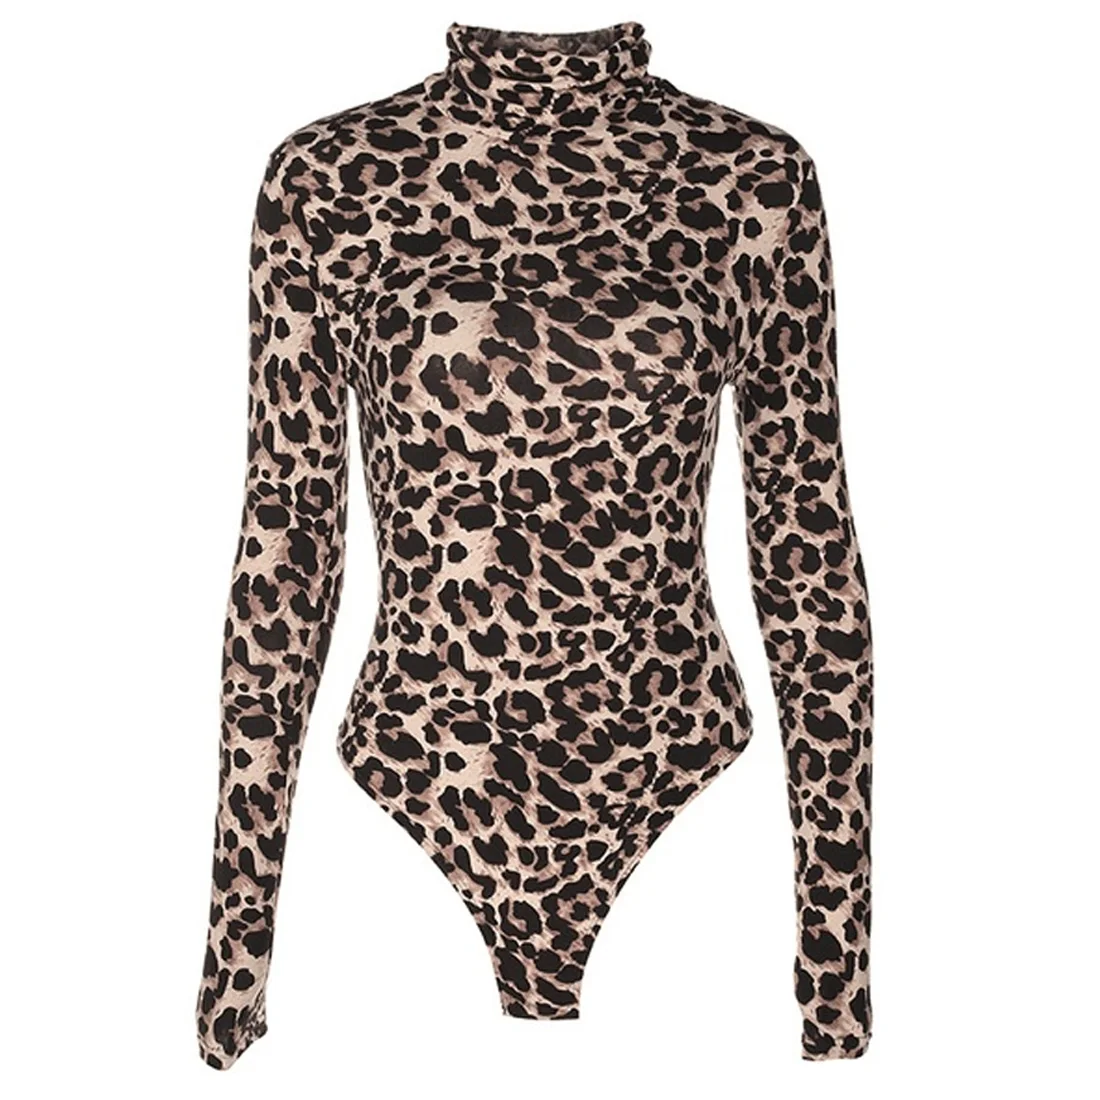 Сексуальный леопардовый боди Женский Водолазка Боди с длинным рукавом купальный костюм с шортами комбинезон цельный